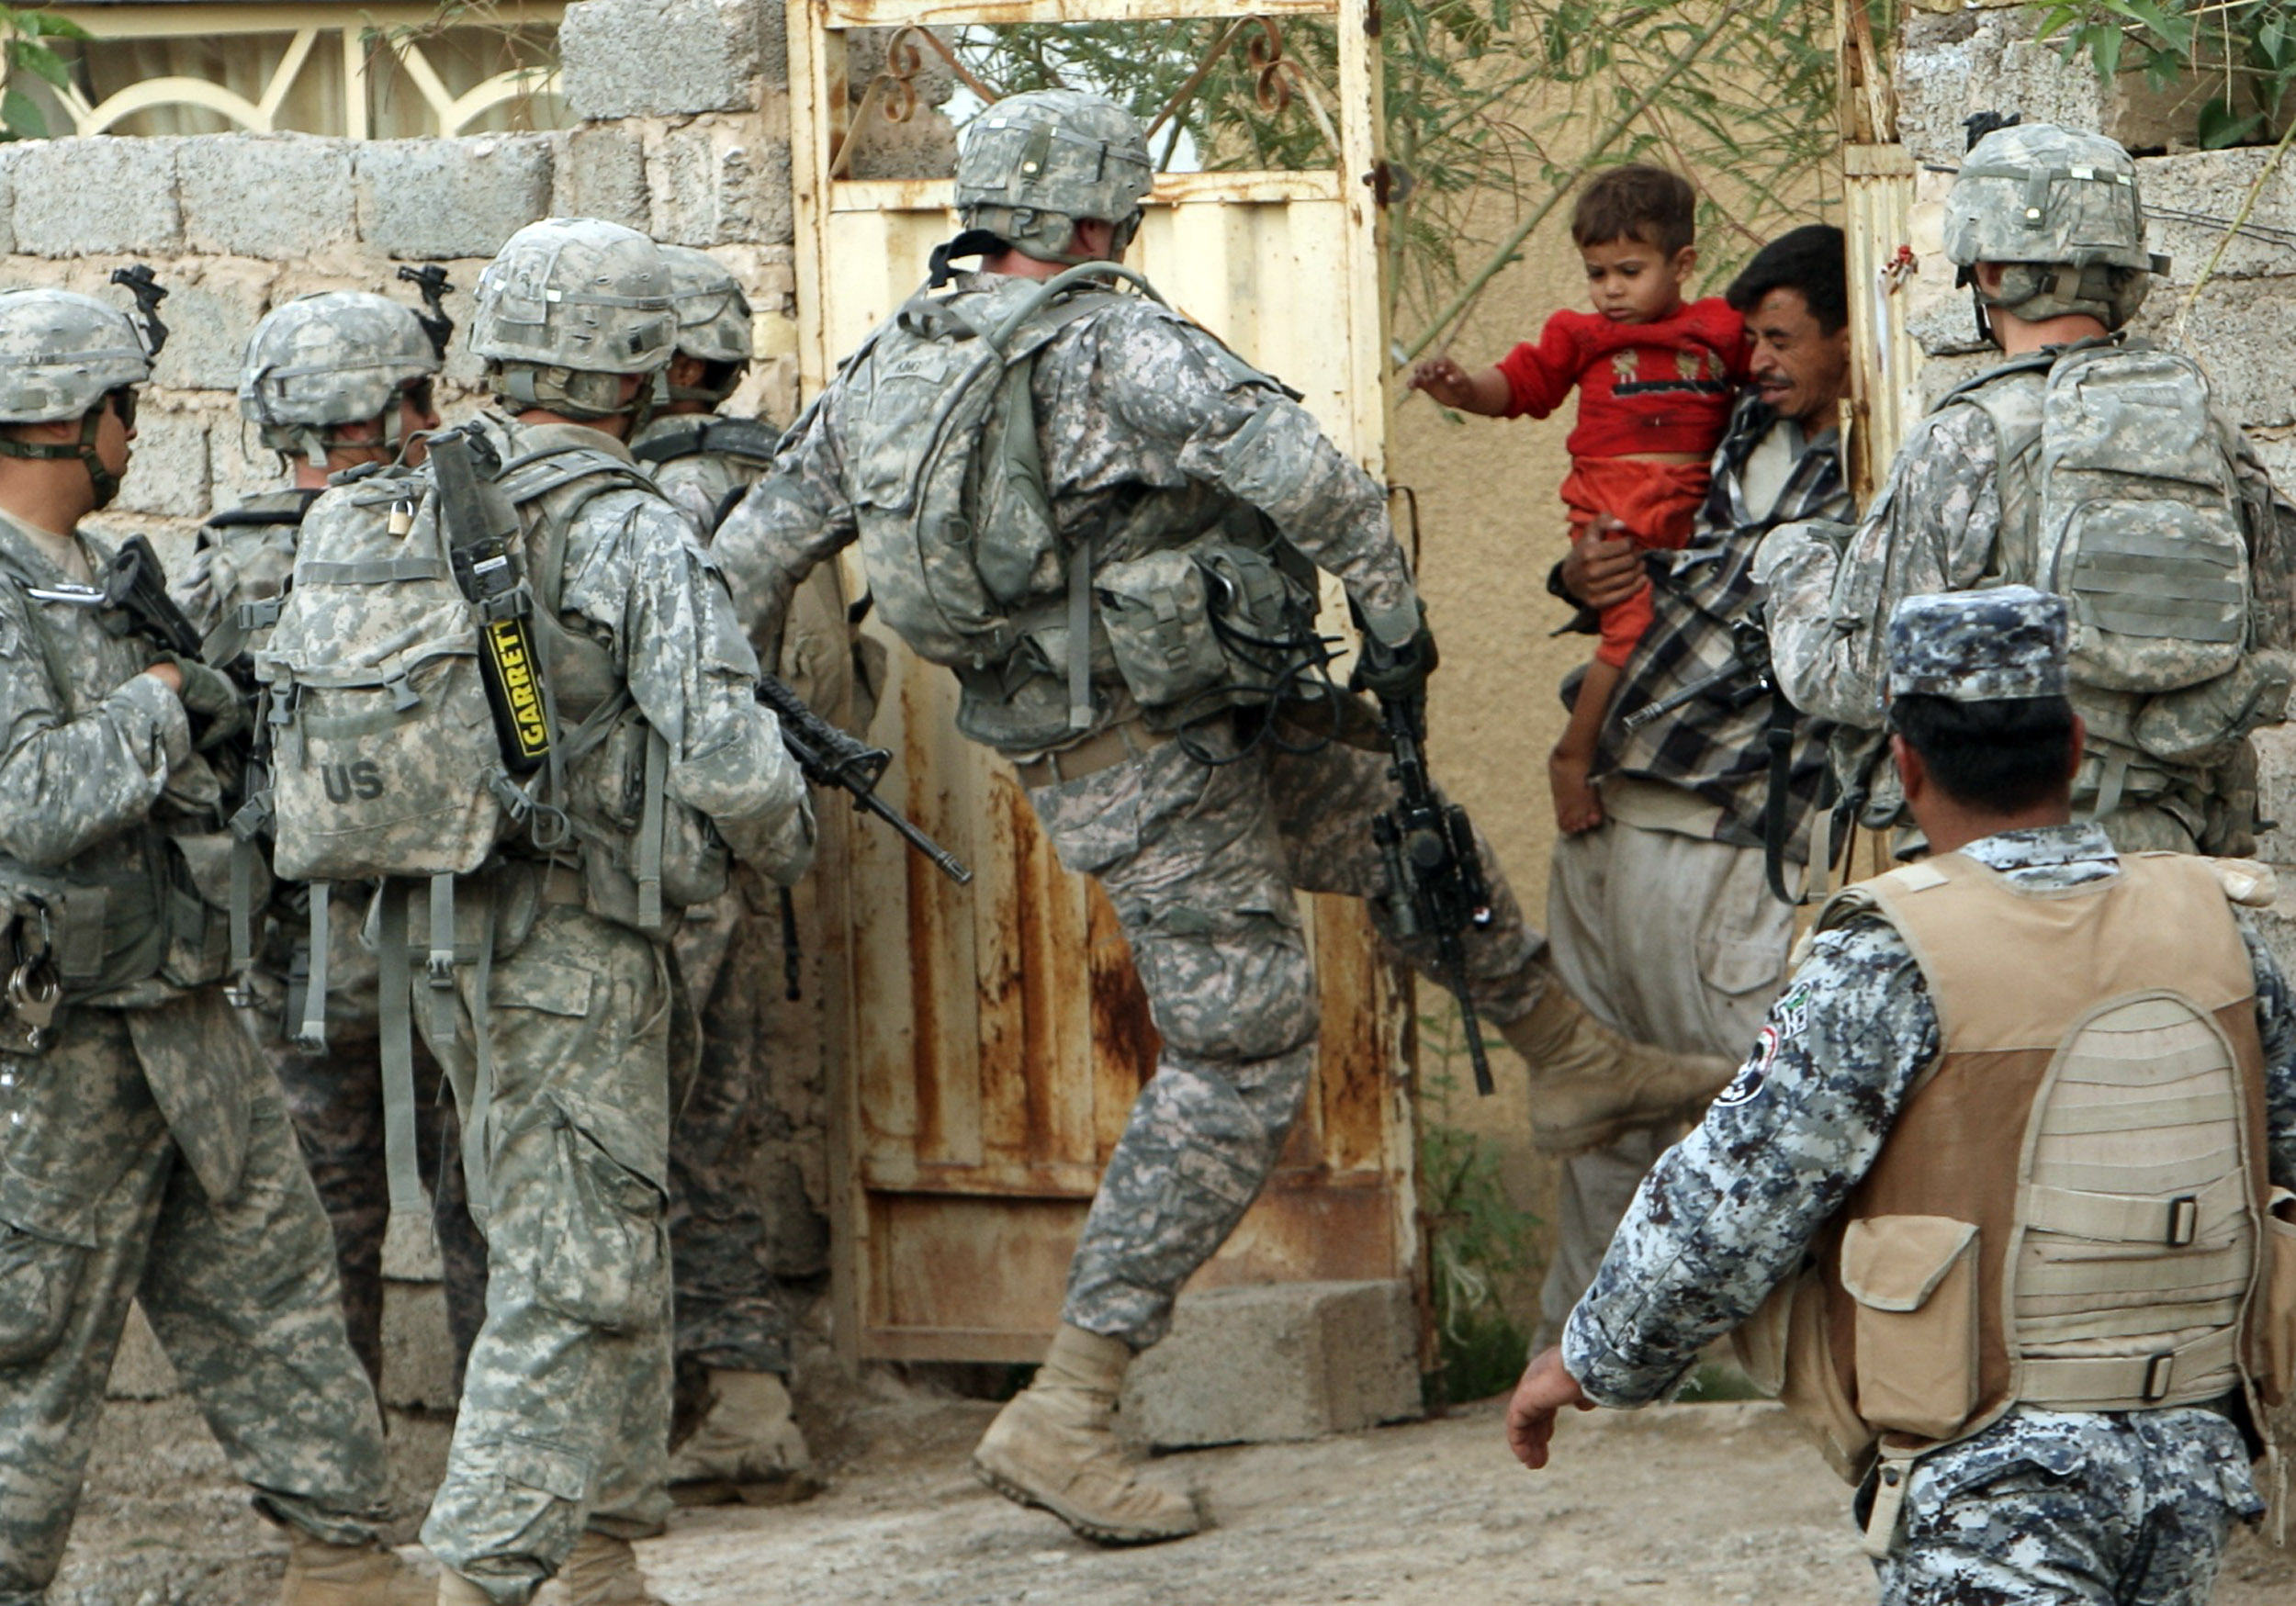 يمهل ولا يهمل.. لعنة العراق تطارد امريكا عبر وقوع 20 حالة انتحار يومياً بين جنودها الذين احتلوا القطر الشقيق 